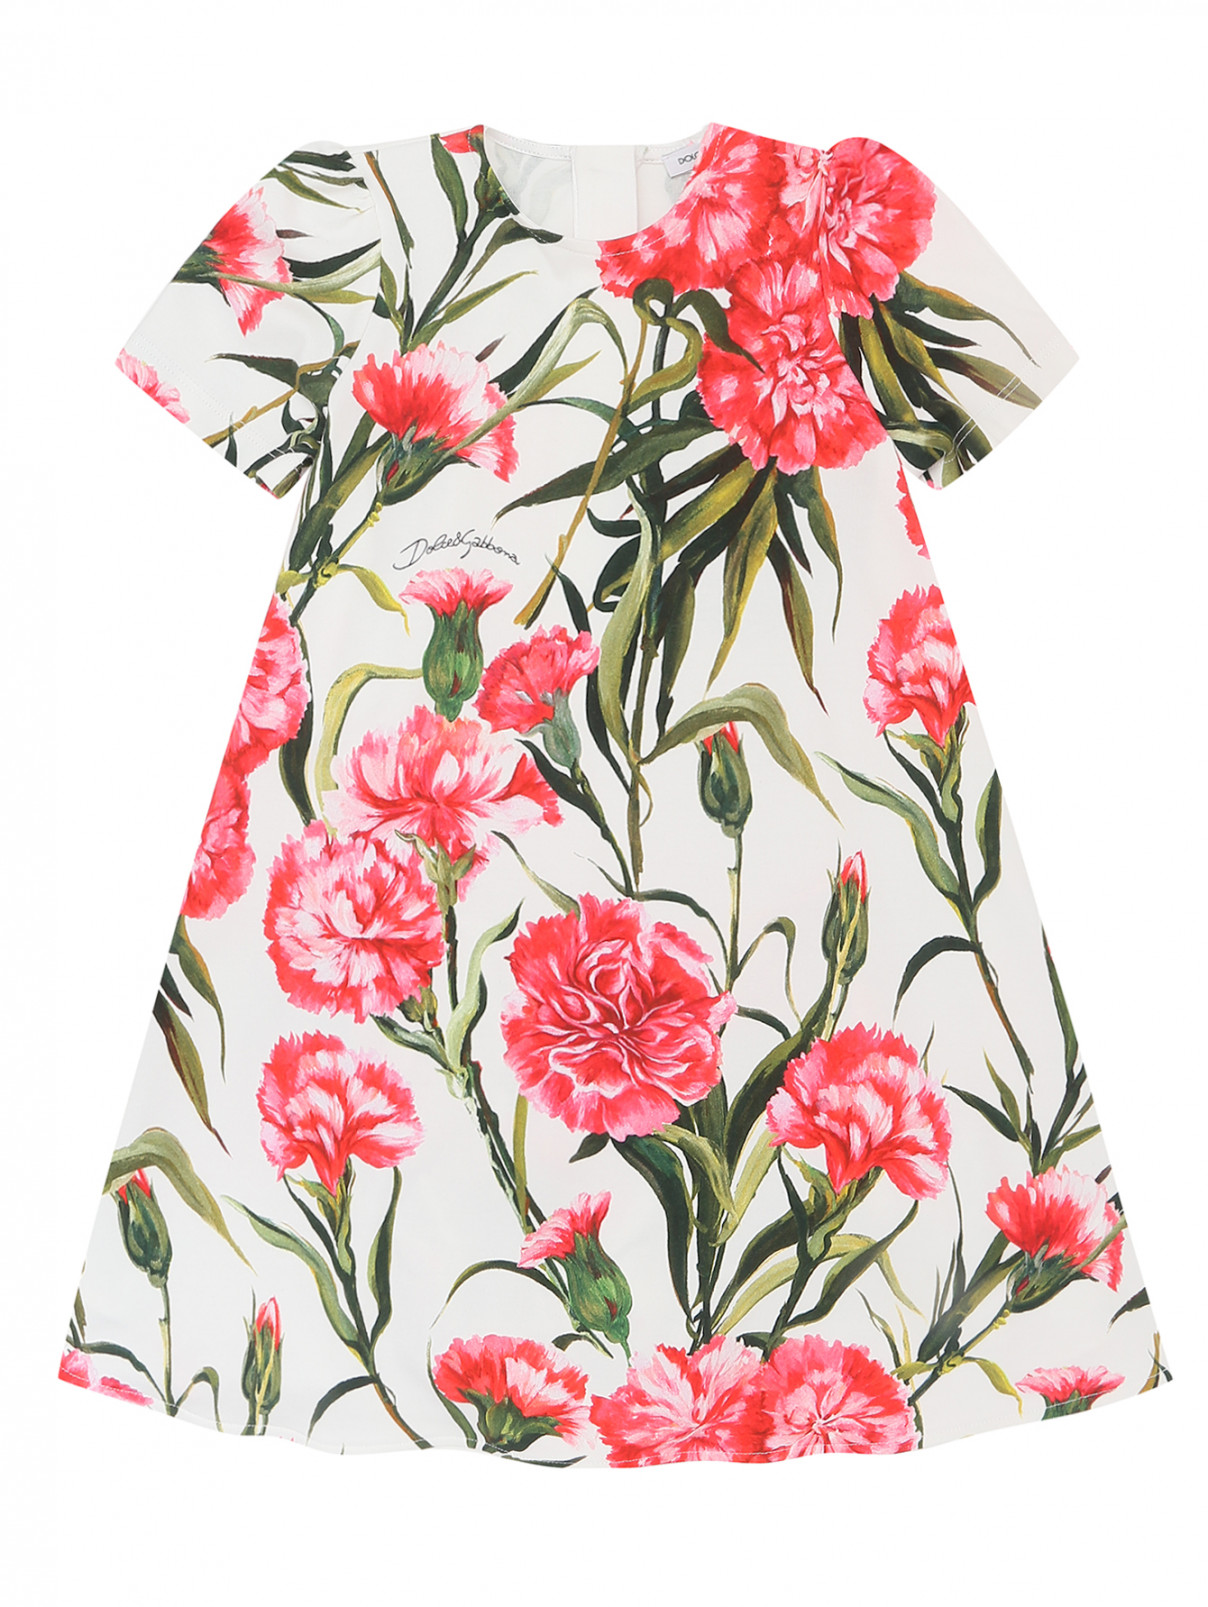 Платье с комплекте с шортами Dolce & Gabbana  –  Общий вид  – Цвет:  Узор